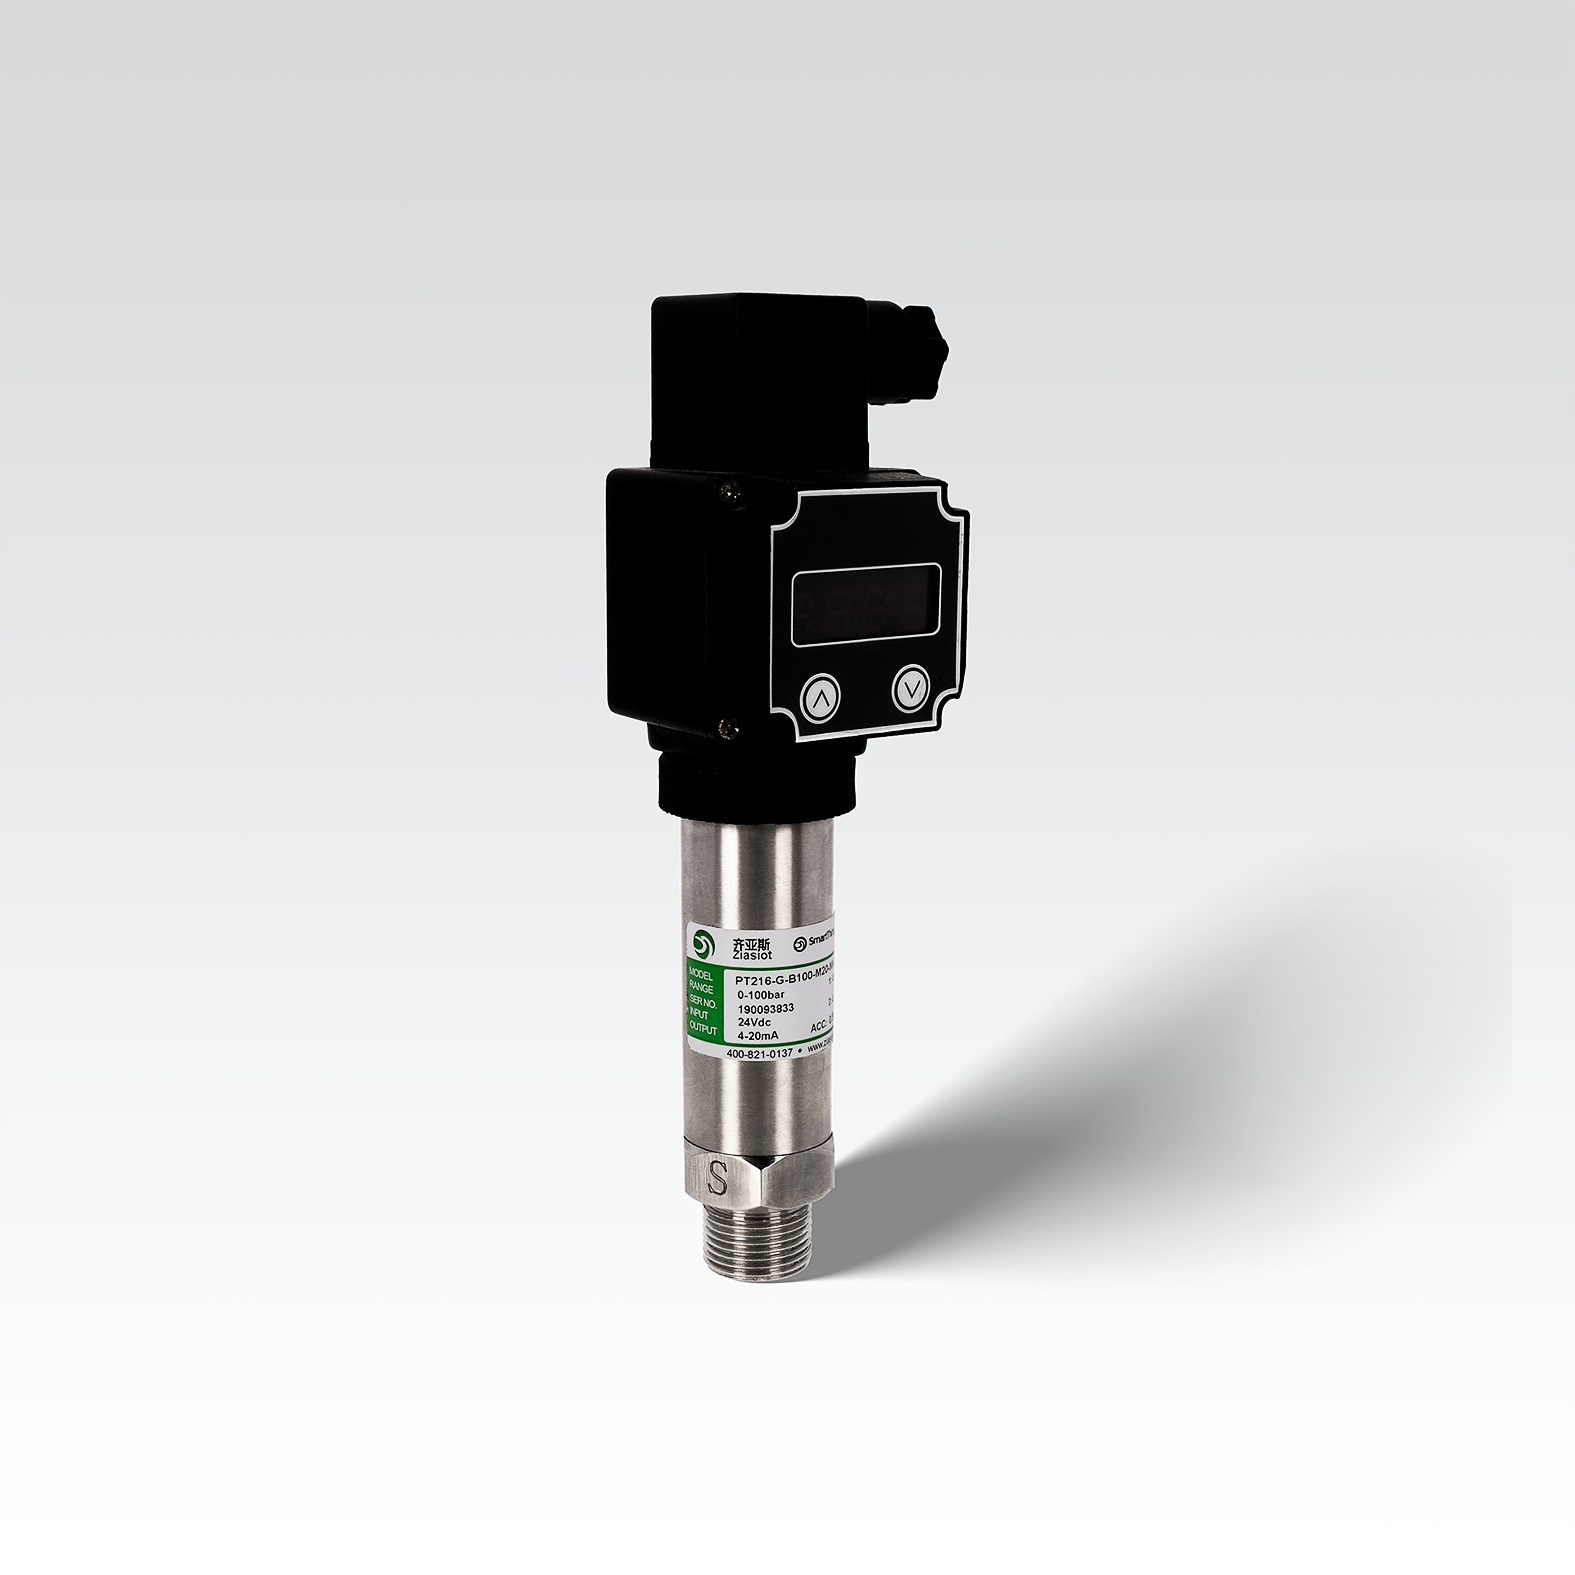 PT210 Standard Strain Gauge Pressure Sensor With LED Display